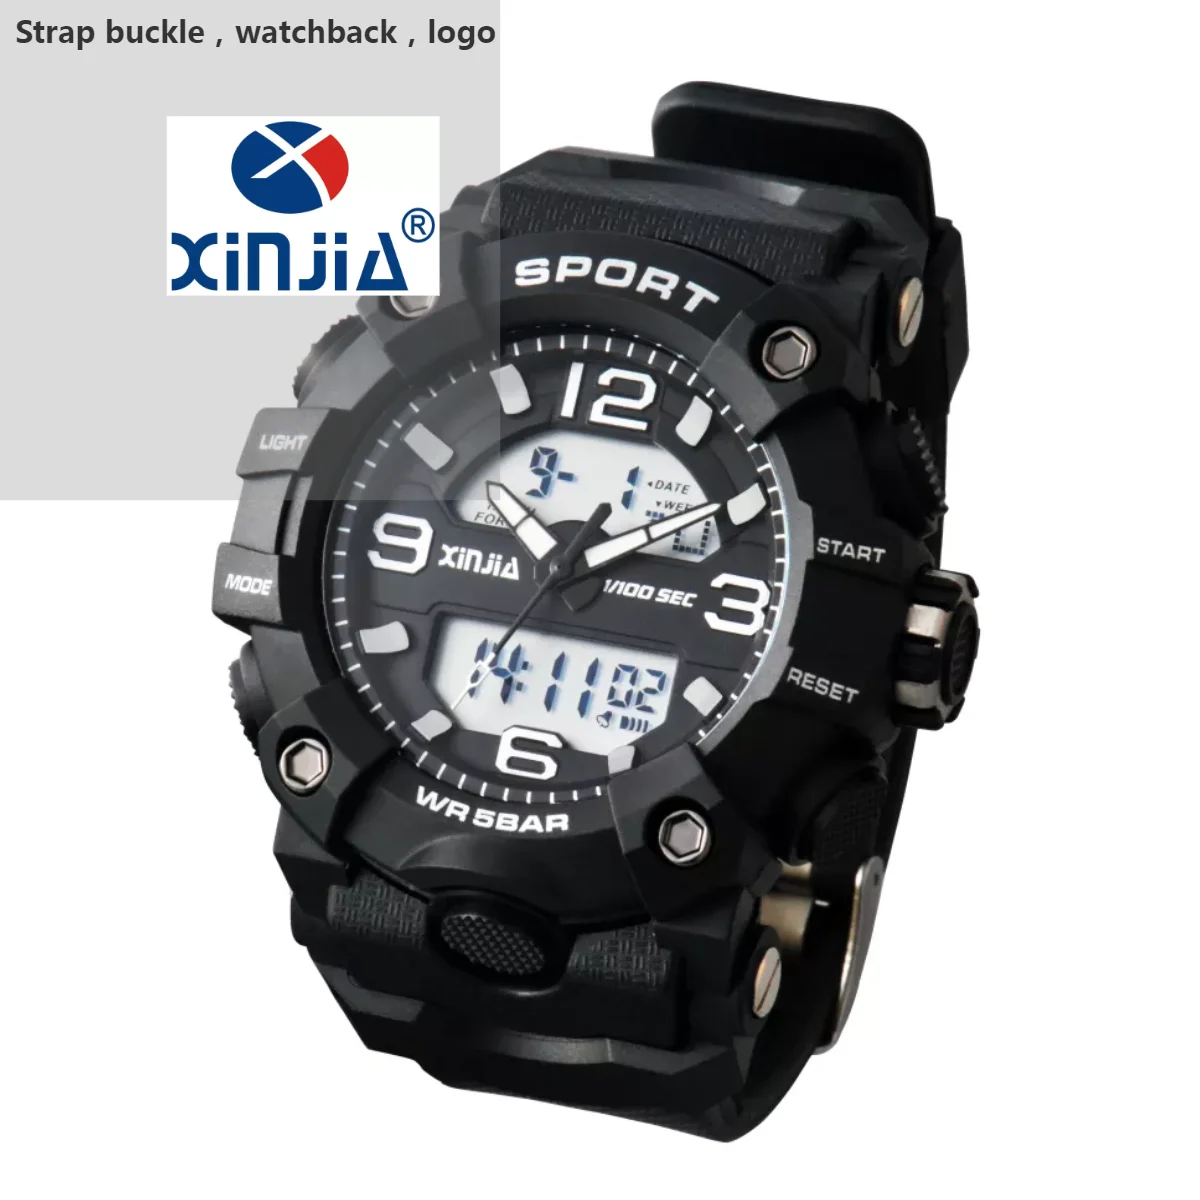 Wholesale Digital Waterproof Sport Reloj Inteligente Wrist Watches For Men  - Buy Sport Watch,Reloj Inteligente,Wrist Watches For Men Product on  Alibaba.com